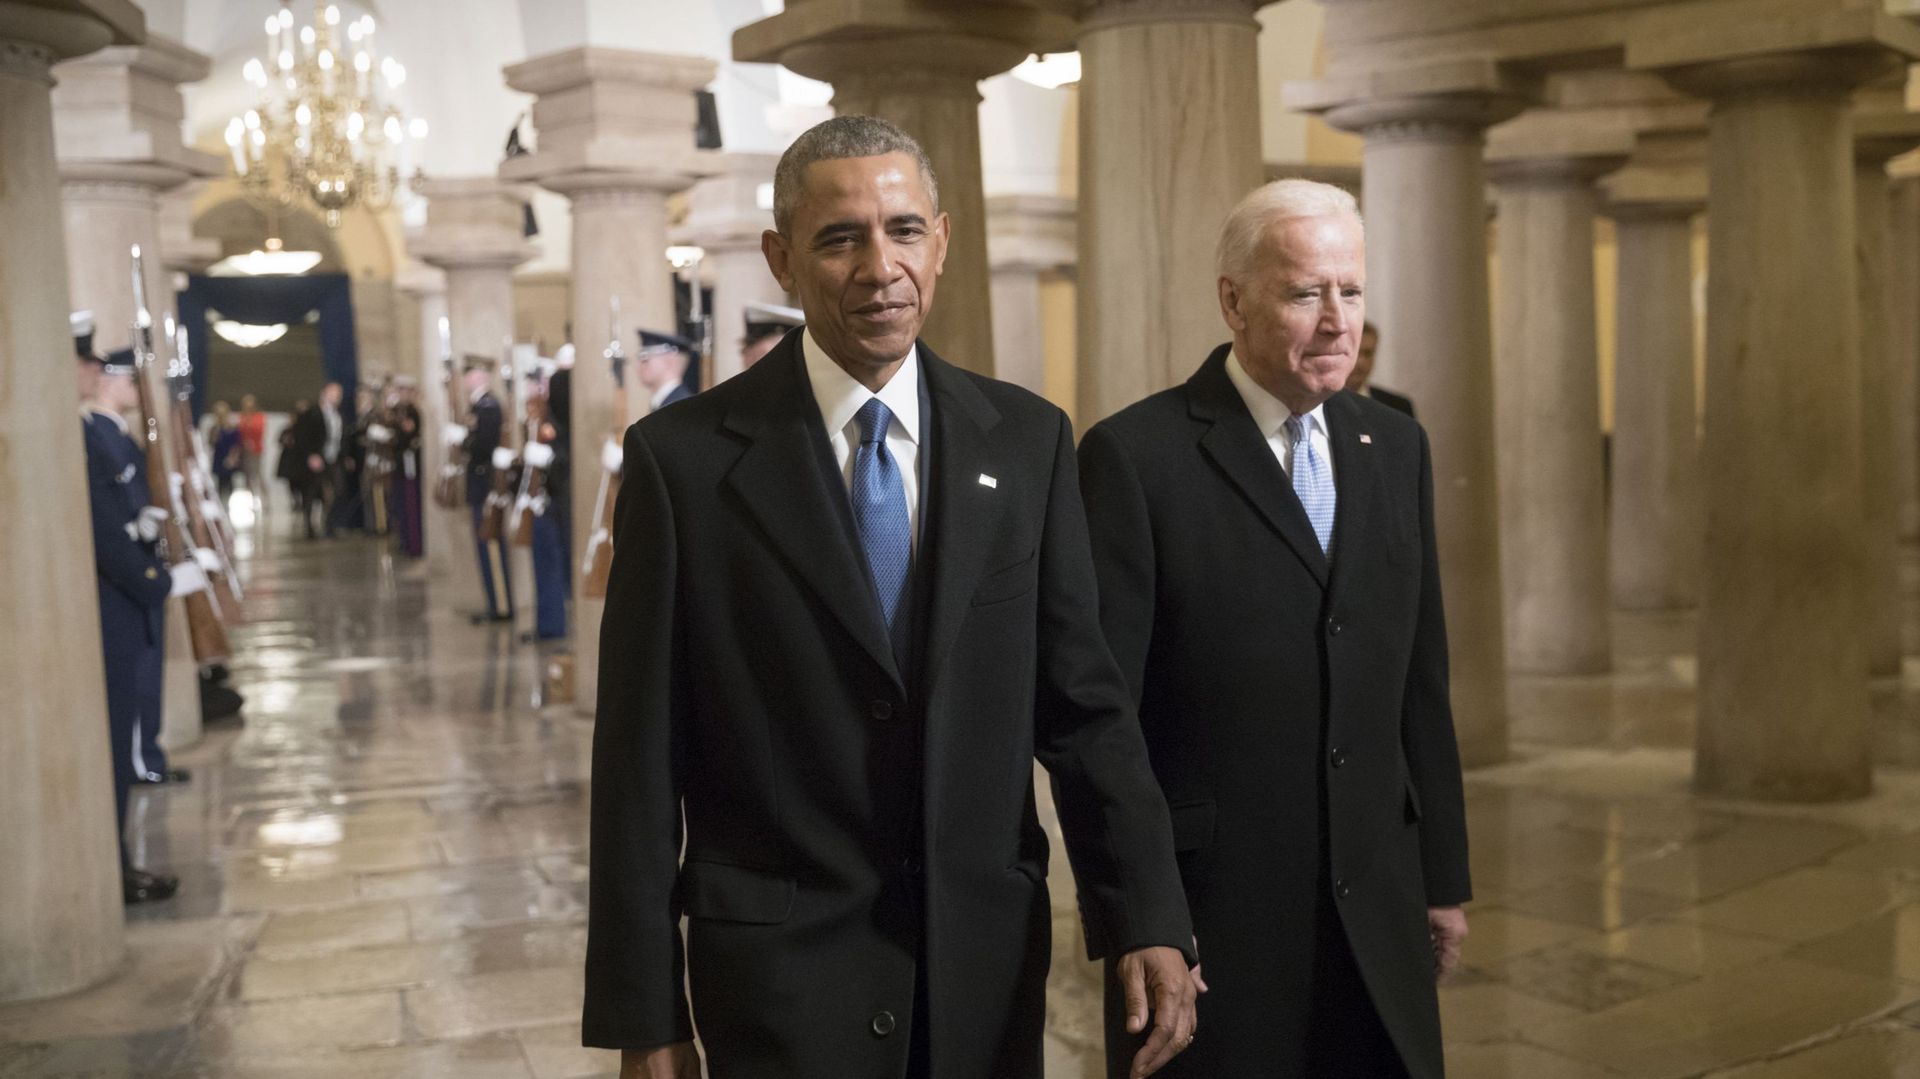 En vertu de son rôle de vice-président, Joe Biden accompagne Barack Obama le jour de la passation de pouvoir à Donald Trump